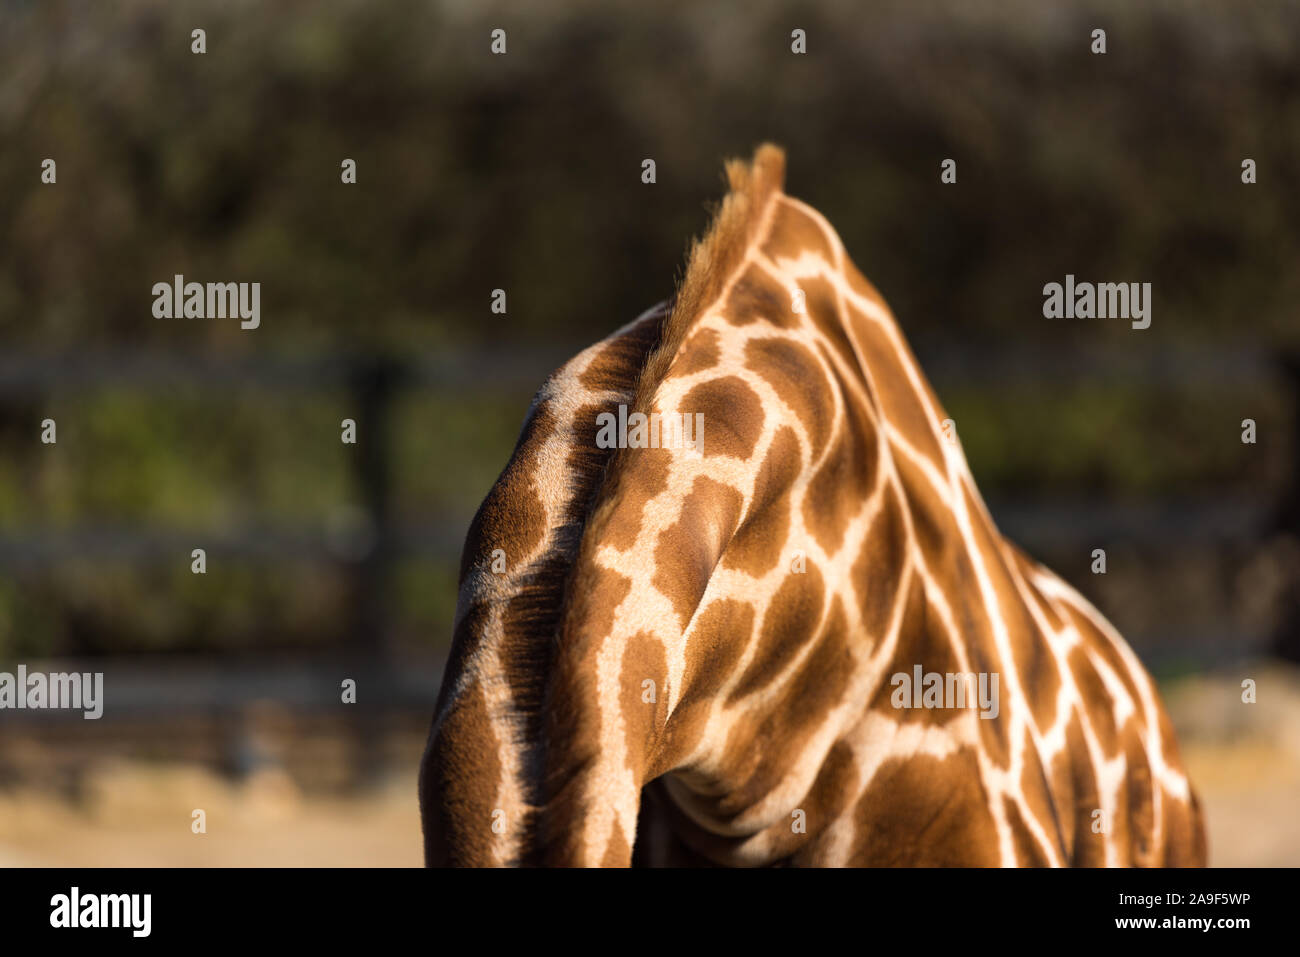 Close up of girafe de la peau avec des taches et la crinière. La faune africaine Banque D'Images